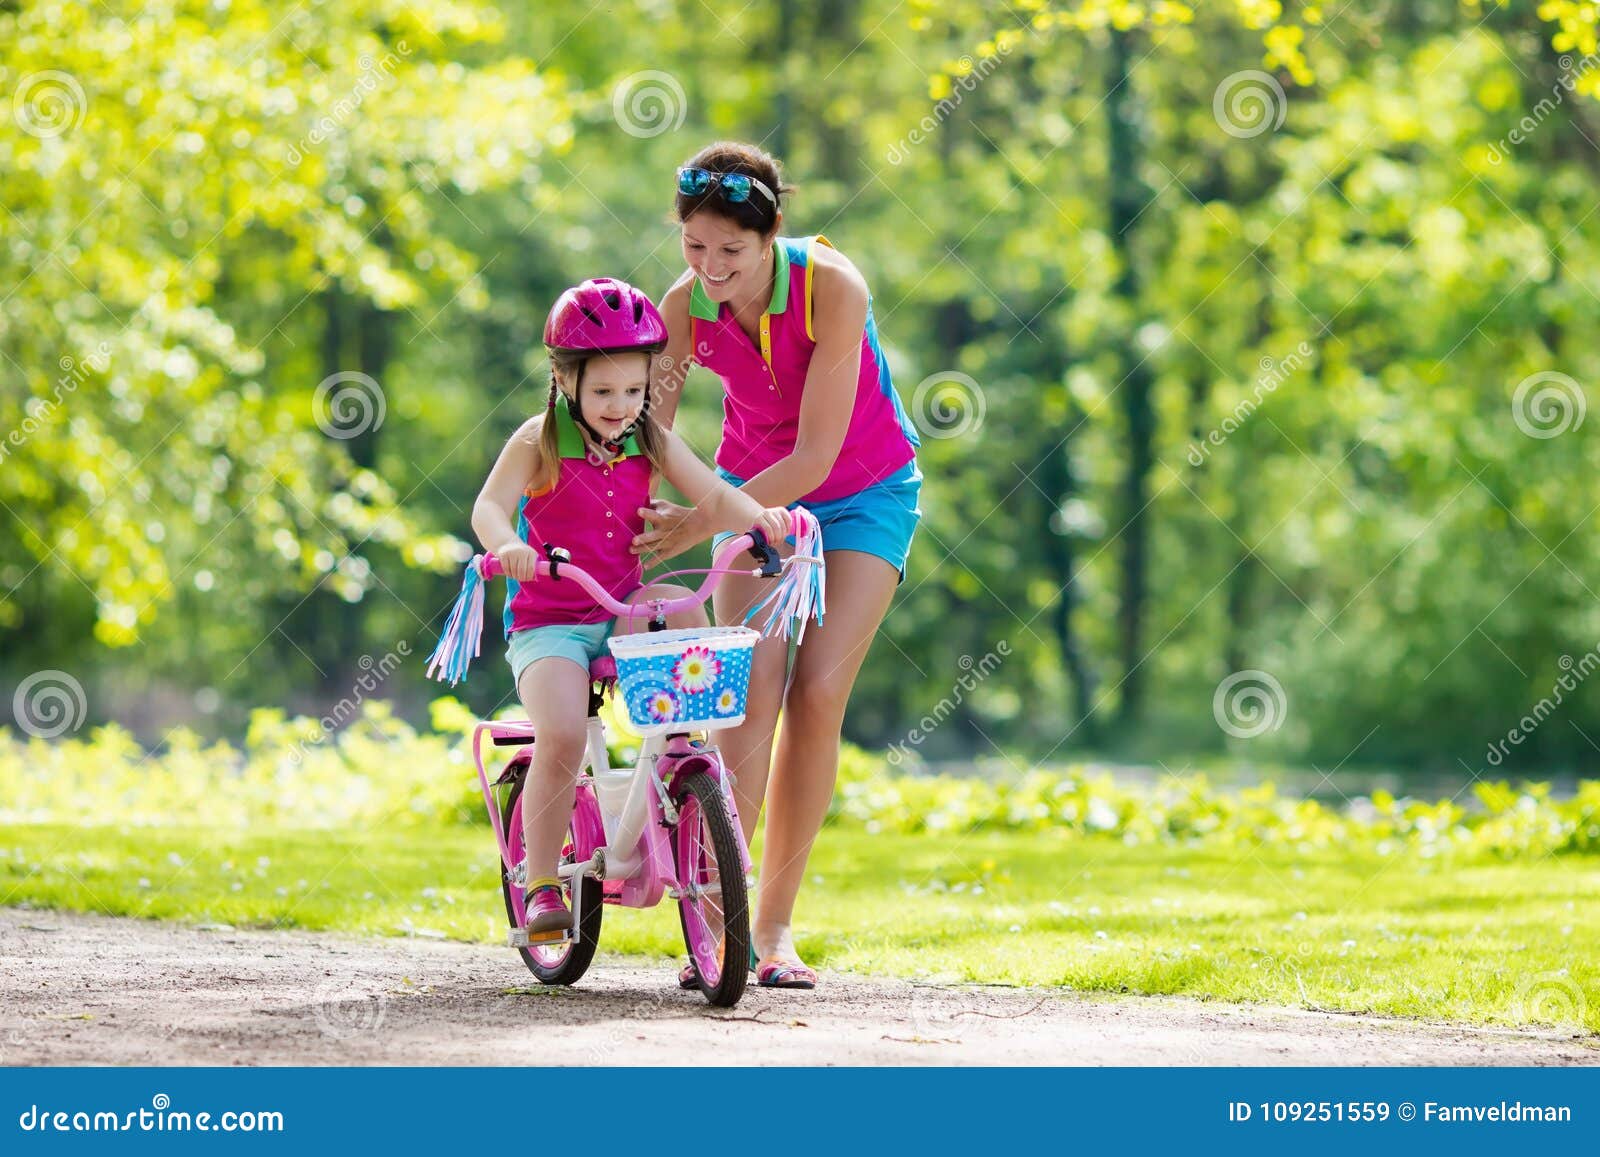 幸福的母亲教女儿在海边沙滩上骑自行车 库存照片. 图片 包括有 子项, 户外, 节假日, 休闲, 女孩 - 204479008